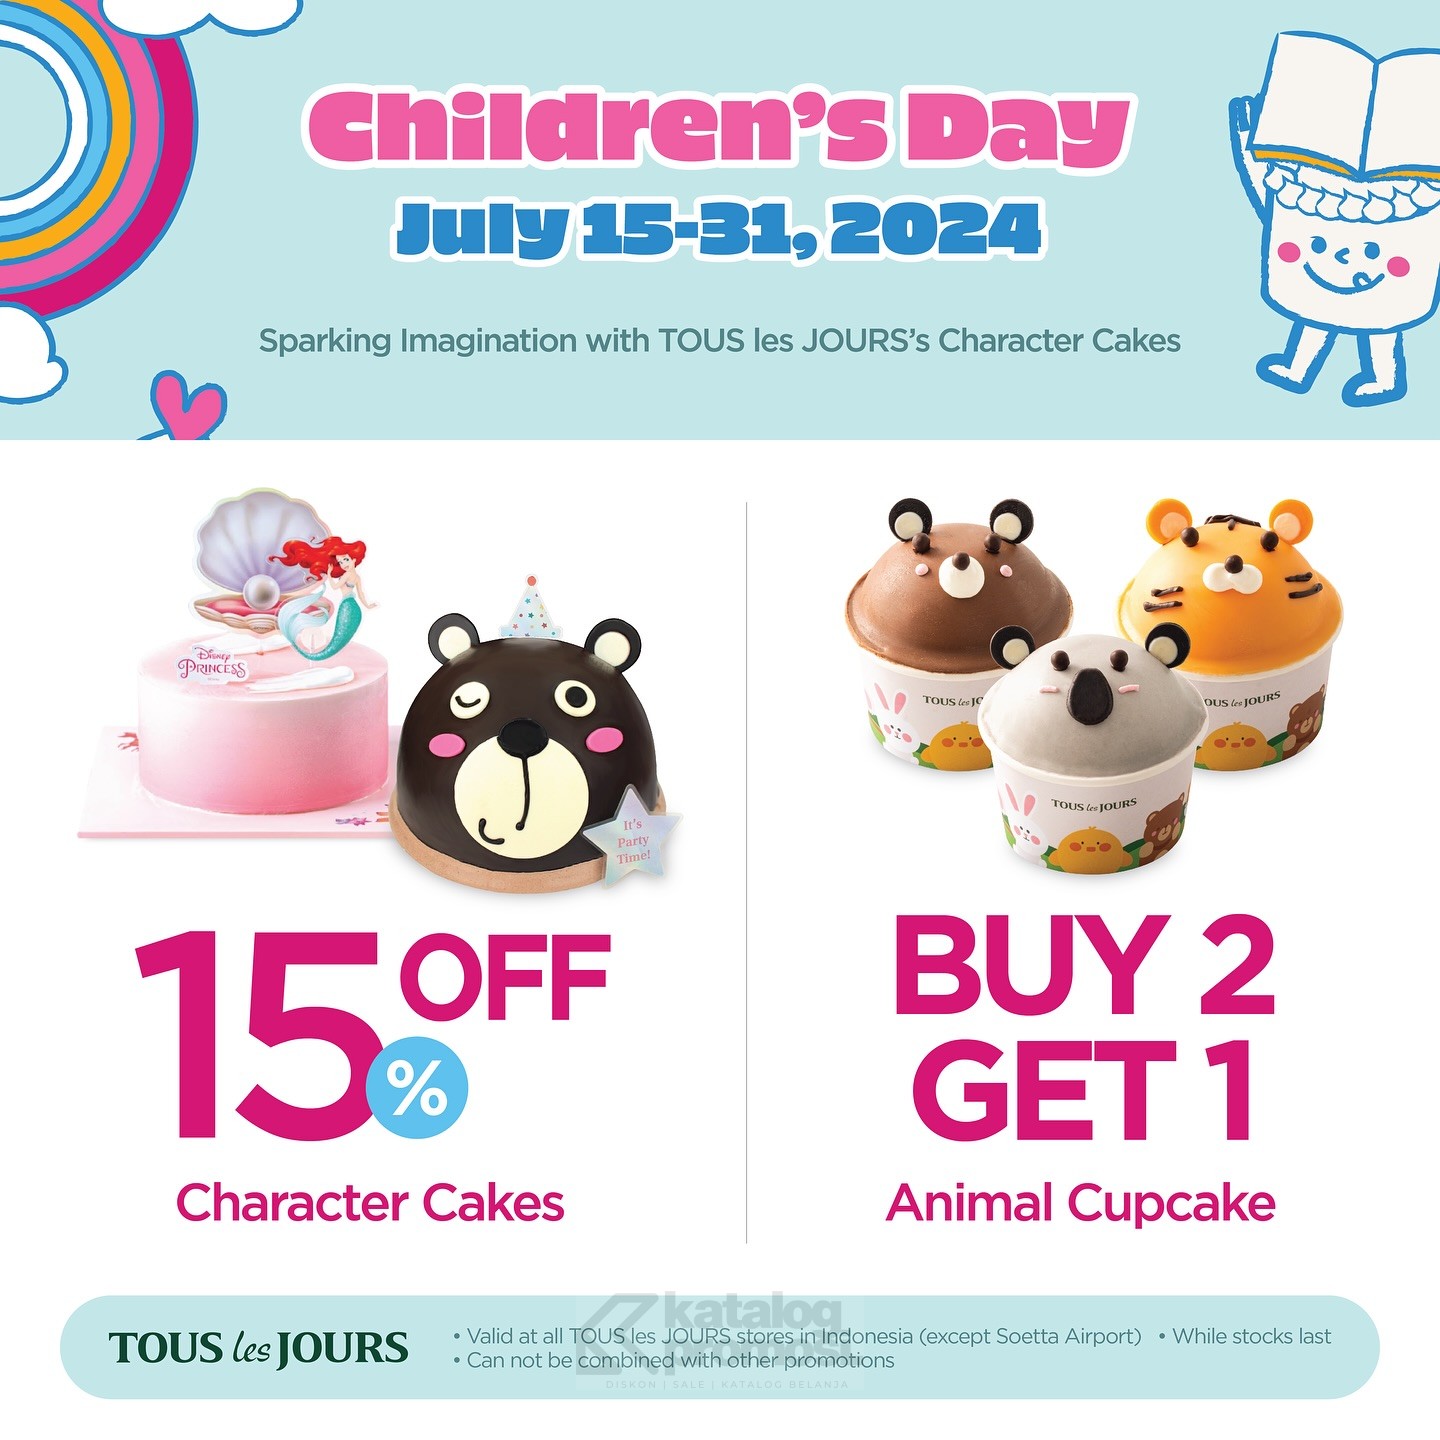 Promo TOUS LES JOURS CHILDREN DAY DISKON 15% untuk CHARACTER CAKES dan BELI 2 GRATIS 1 animal cupcakes